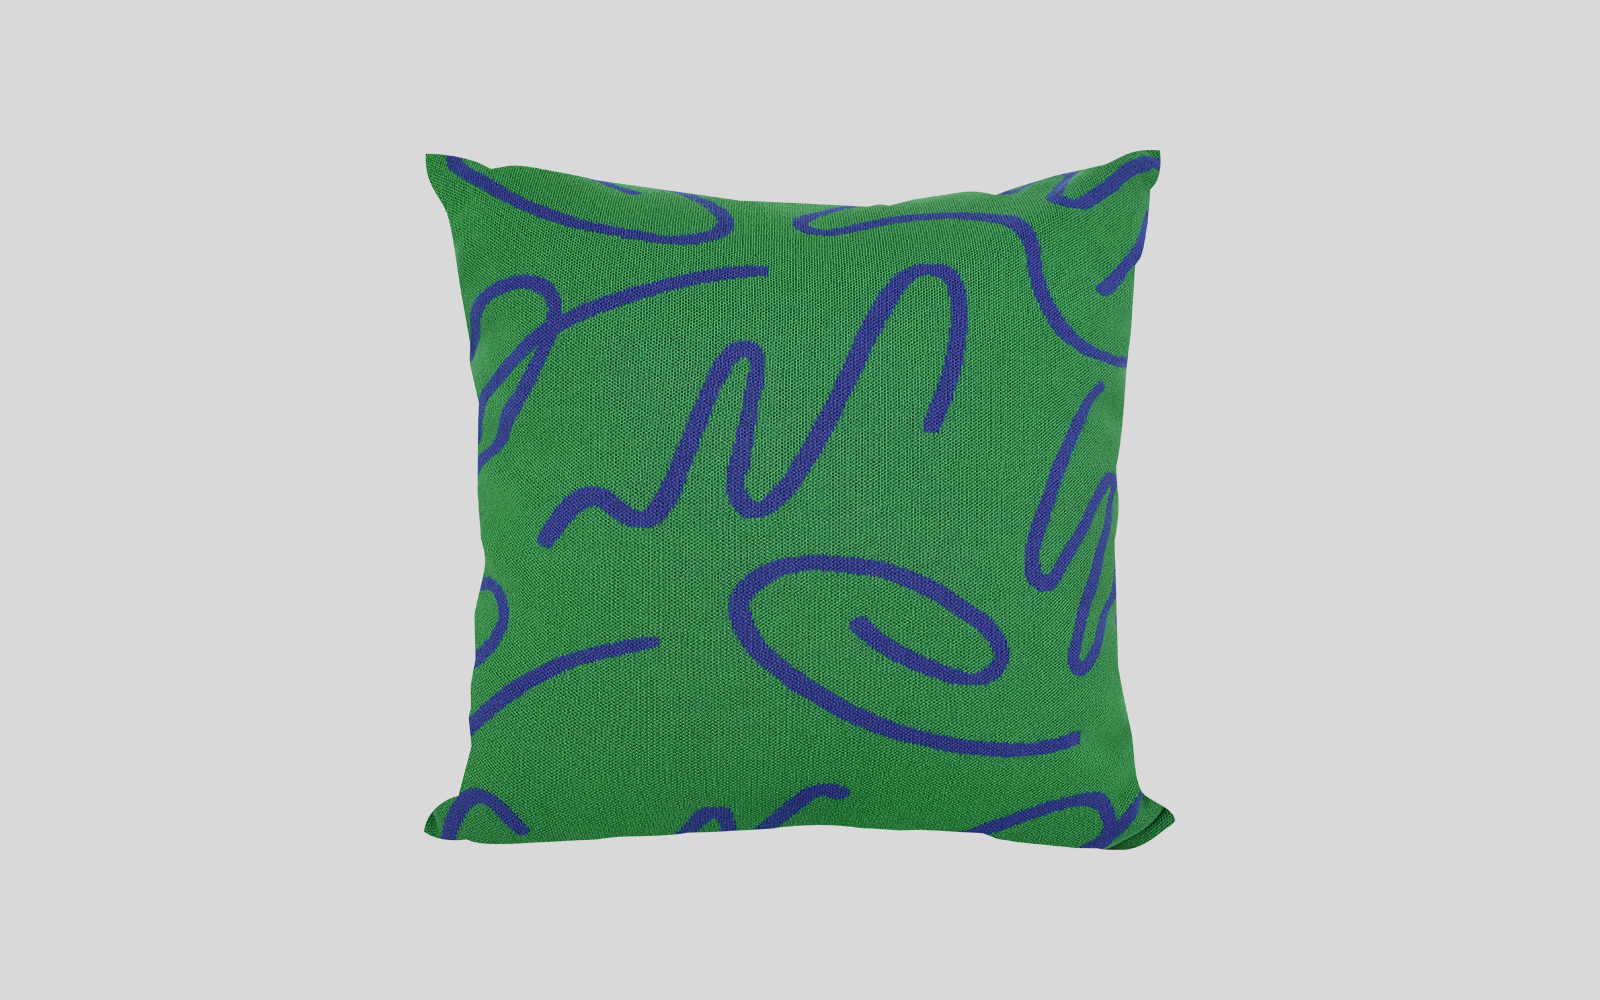  45 Waltz Green Knit Cushion by studio word